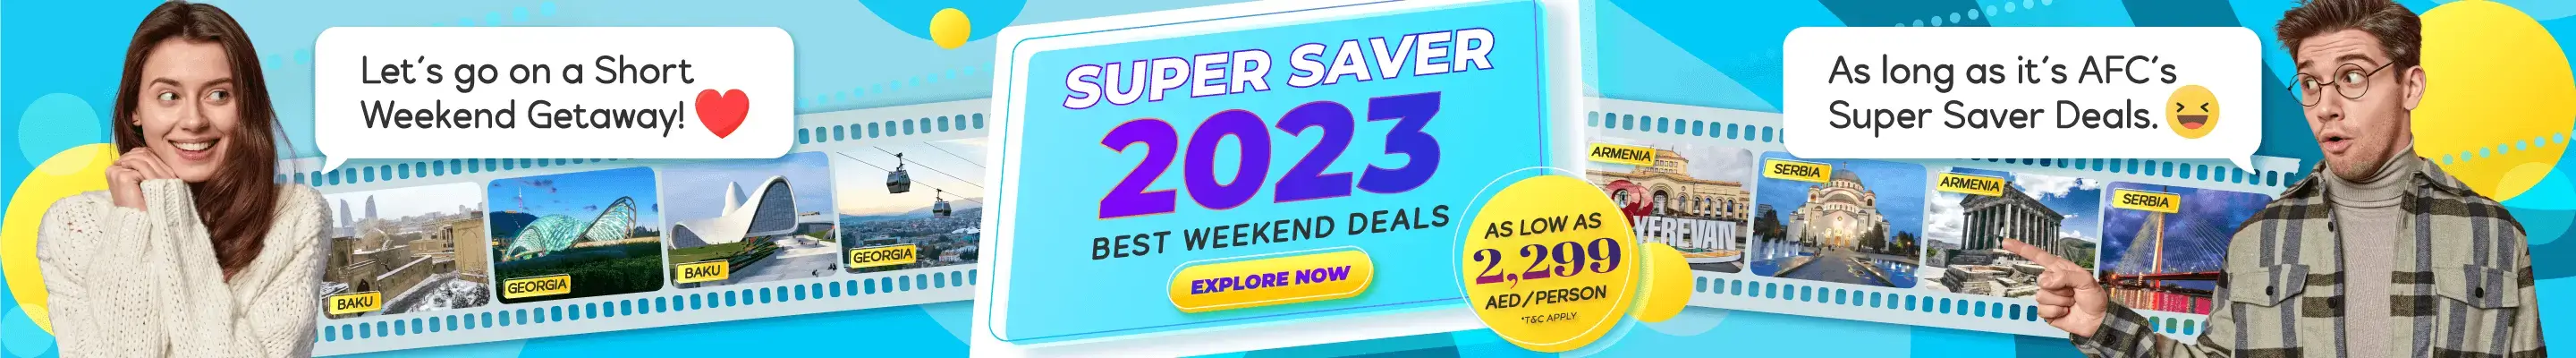 Super Saver Deals